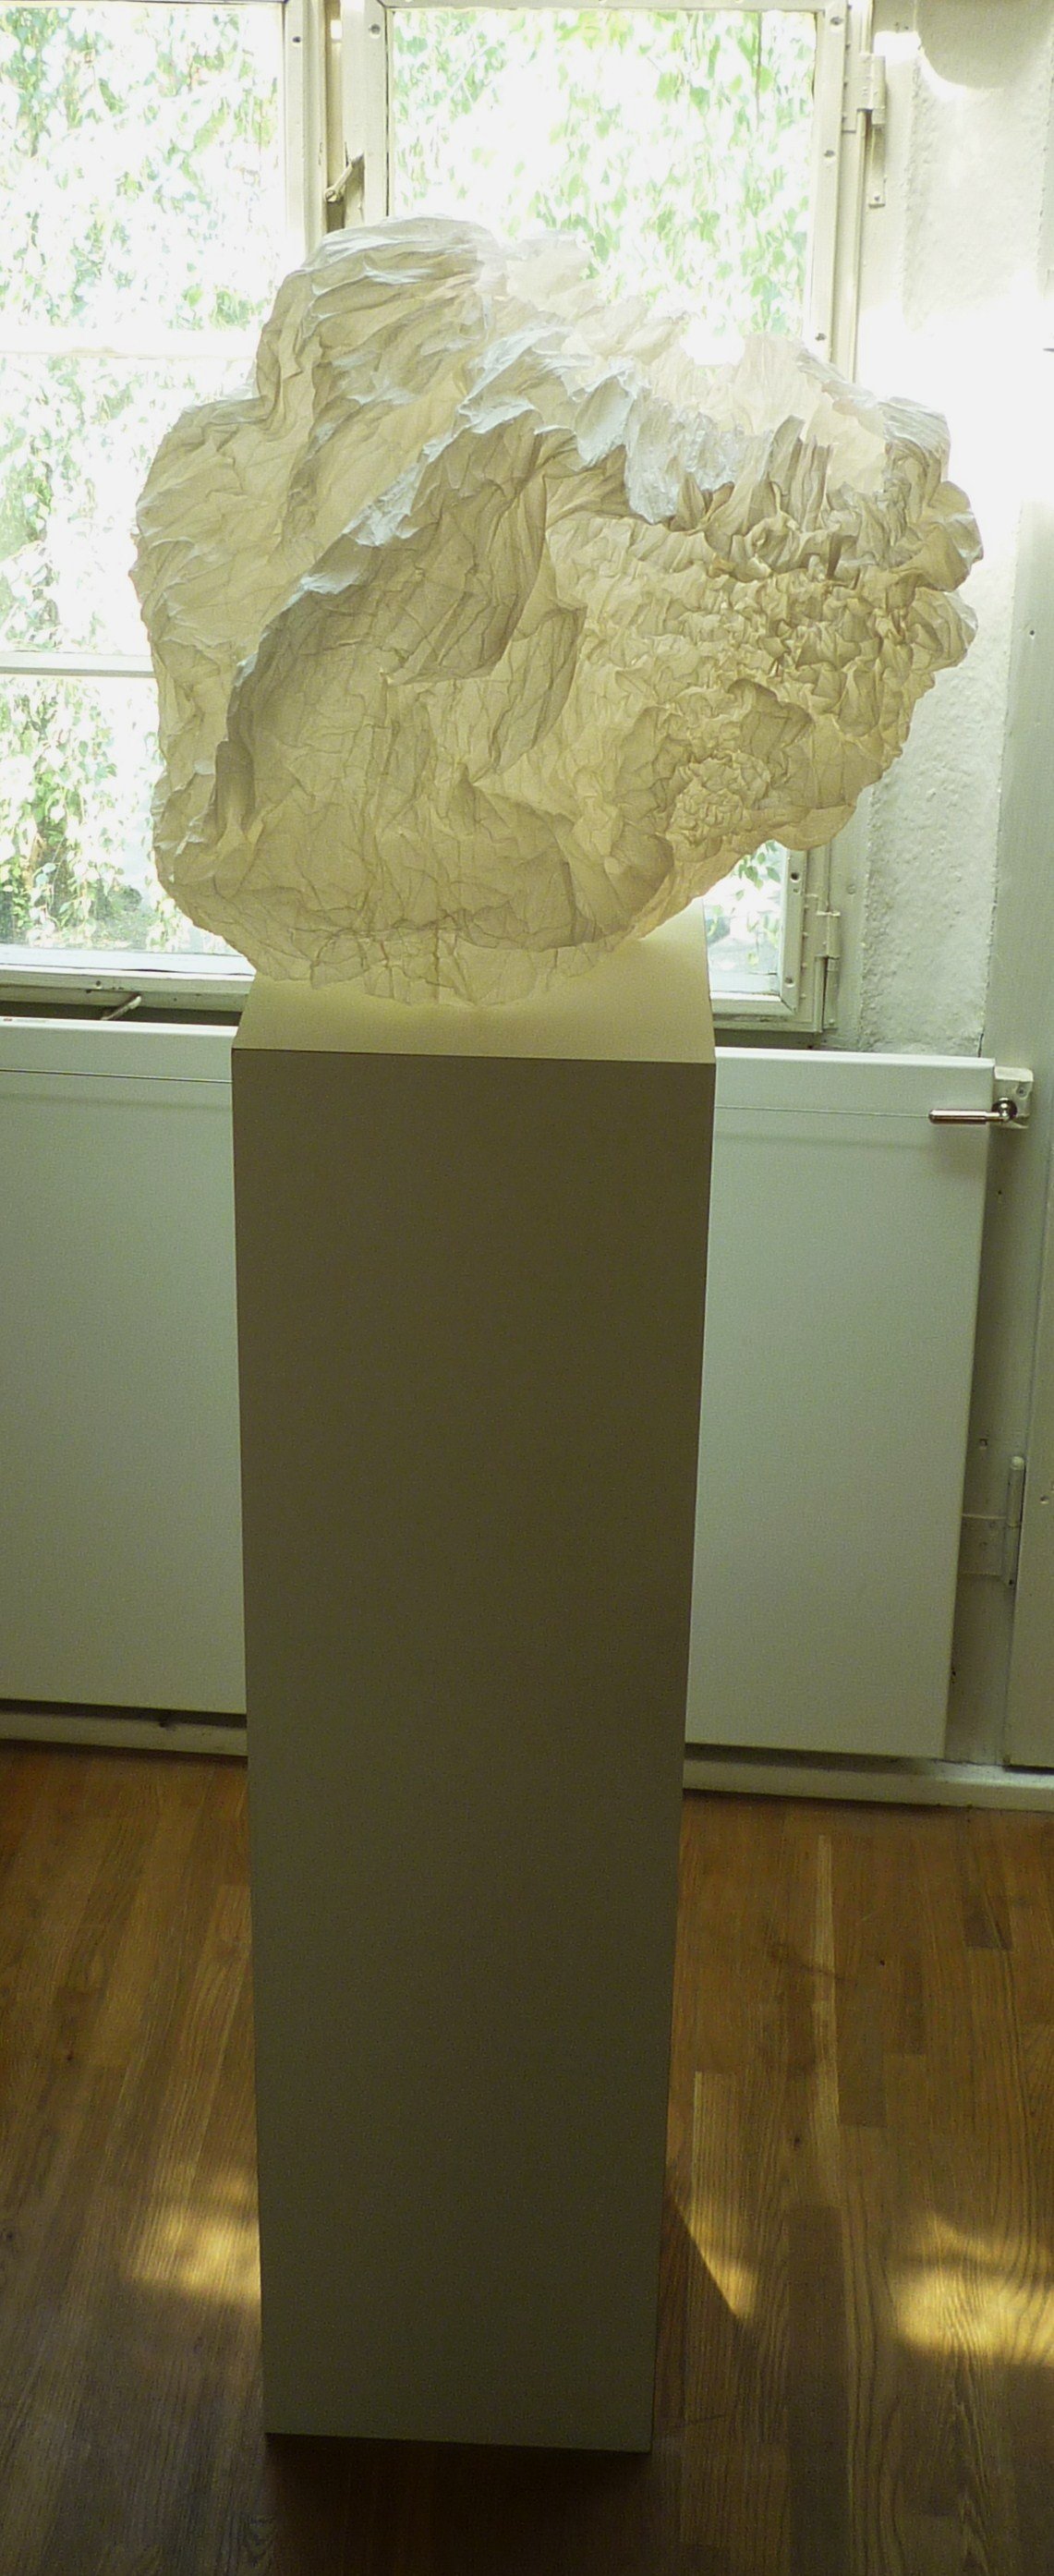 Sibylle Nestrasil, "Missgunst", Seidenpapier, Kleisterrmix, 43 x 38 x 32 cm